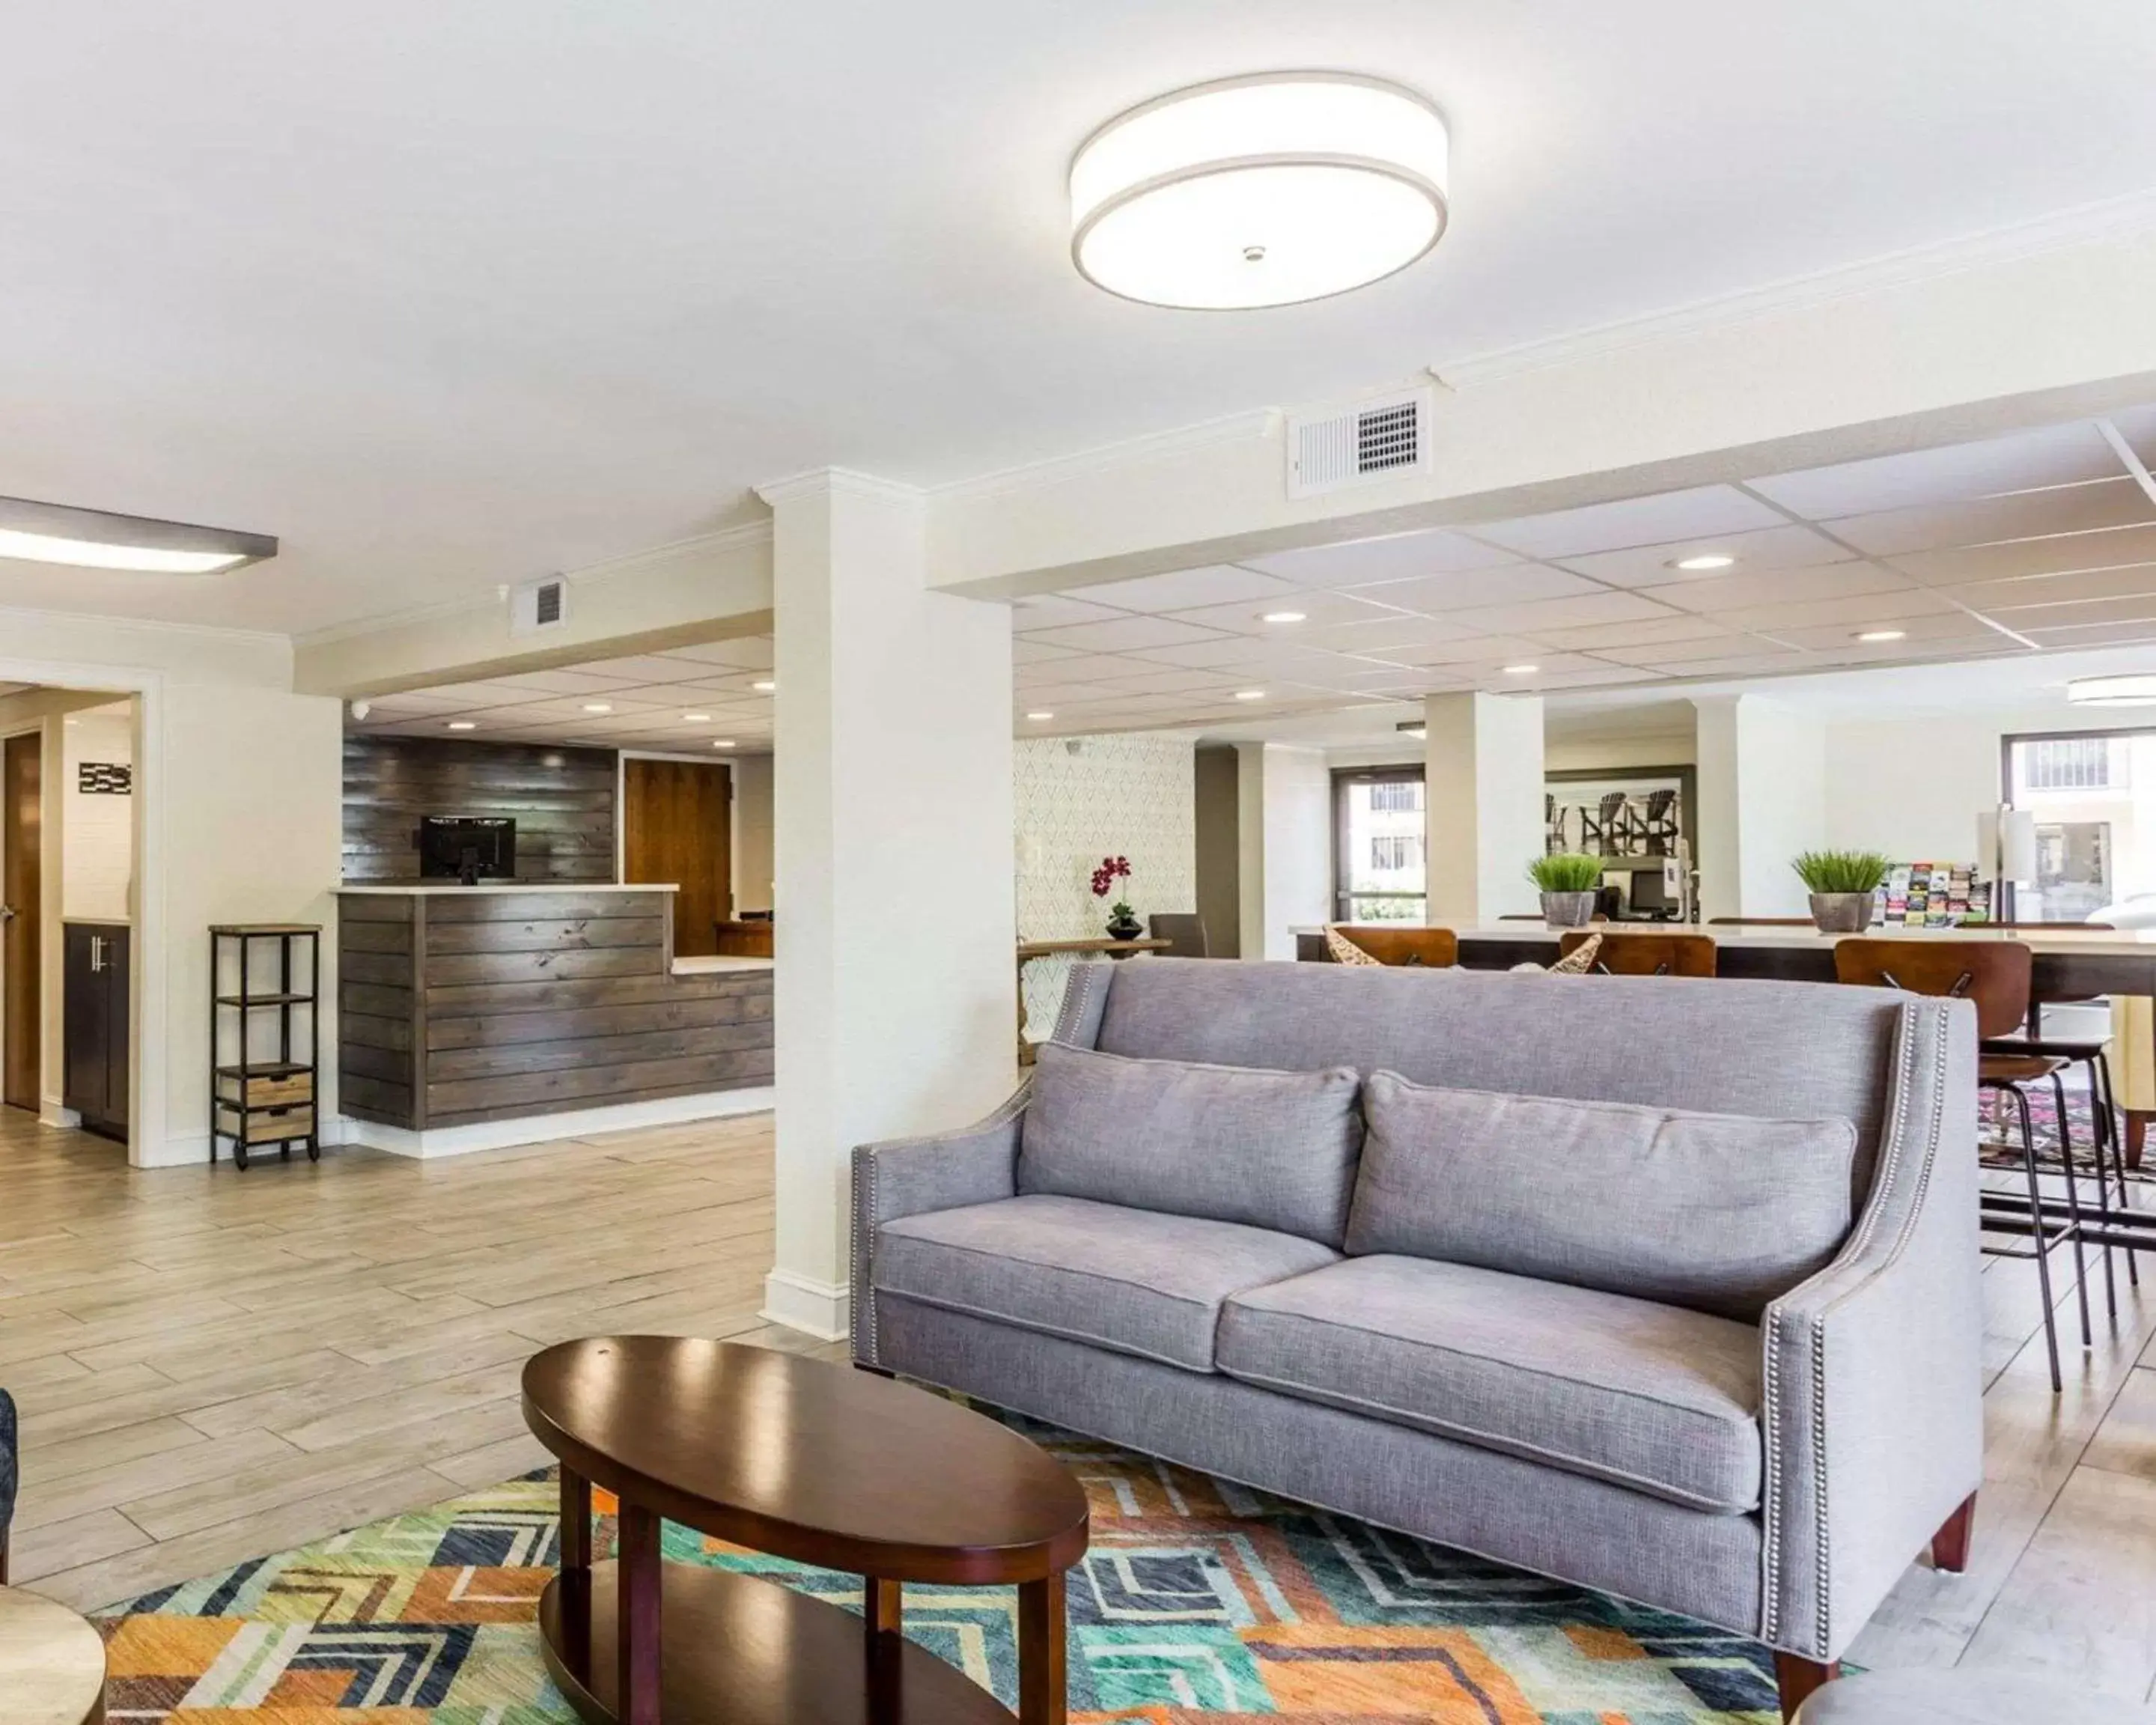 Lobby or reception, Lobby/Reception in Quality Inn Mt. Pleasant – Charleston